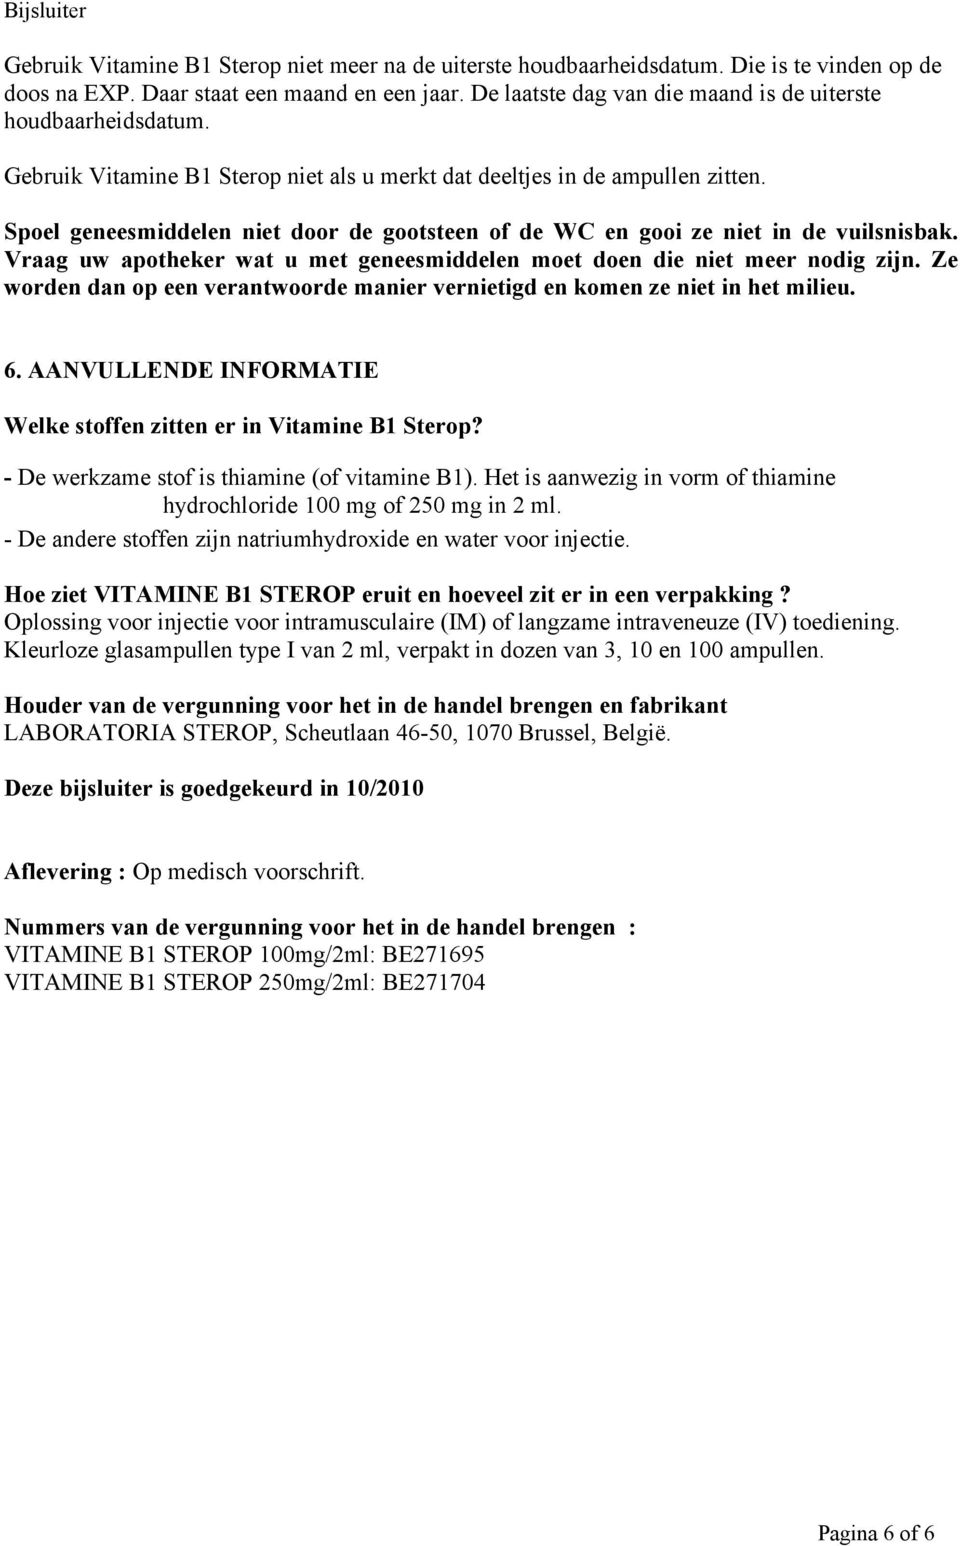 BIJSLUITER: INFORMATIE VOOR GEBRUIKERS. VITAMINE B1 STEROP 100mg/2ml VITAMINE  B1 STEROP 250mg/2ml oplossing voor injectie. Thiamine hydrochloride - PDF  Free Download